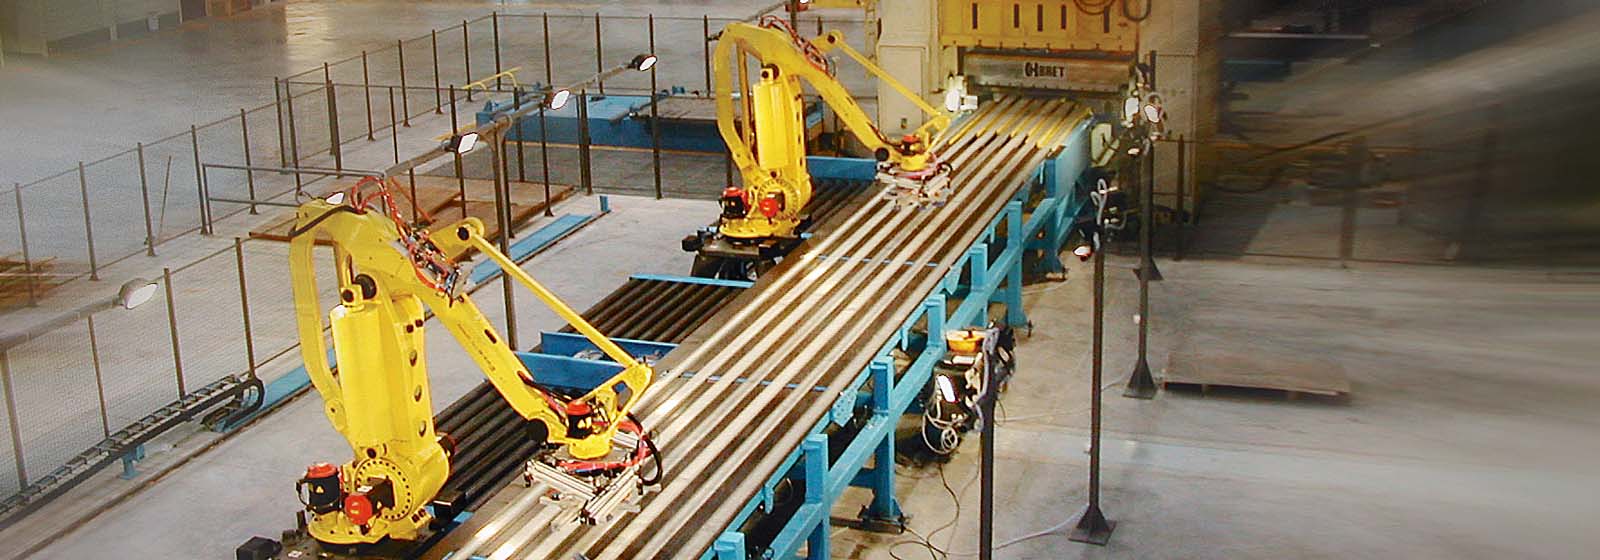 Two M-410 robots handling large metal sheets